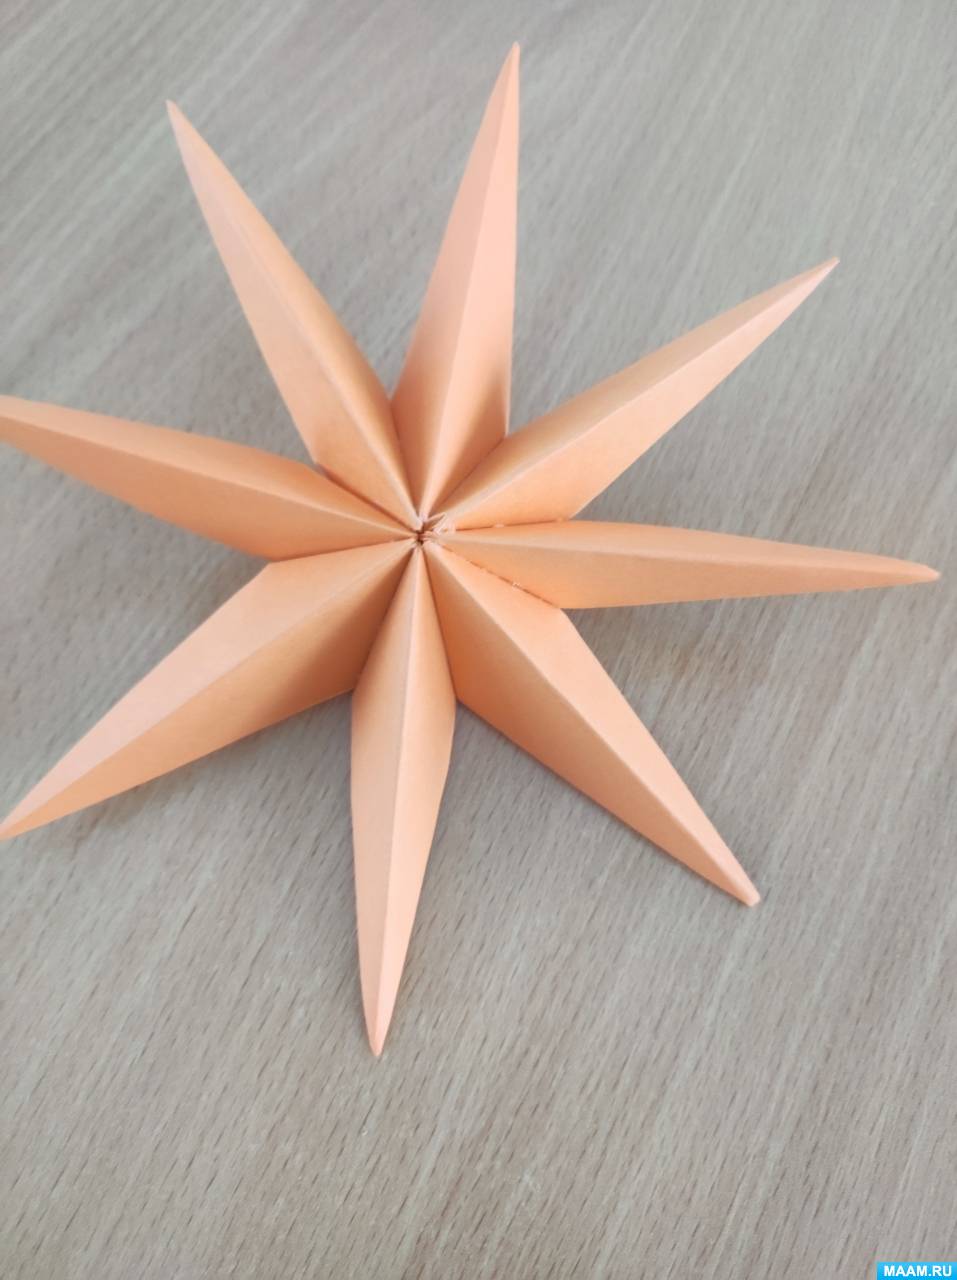 Как сделать Звезду из бумаги Четырехконечную | Оригами Геометрические Фигуры без клея своими руками